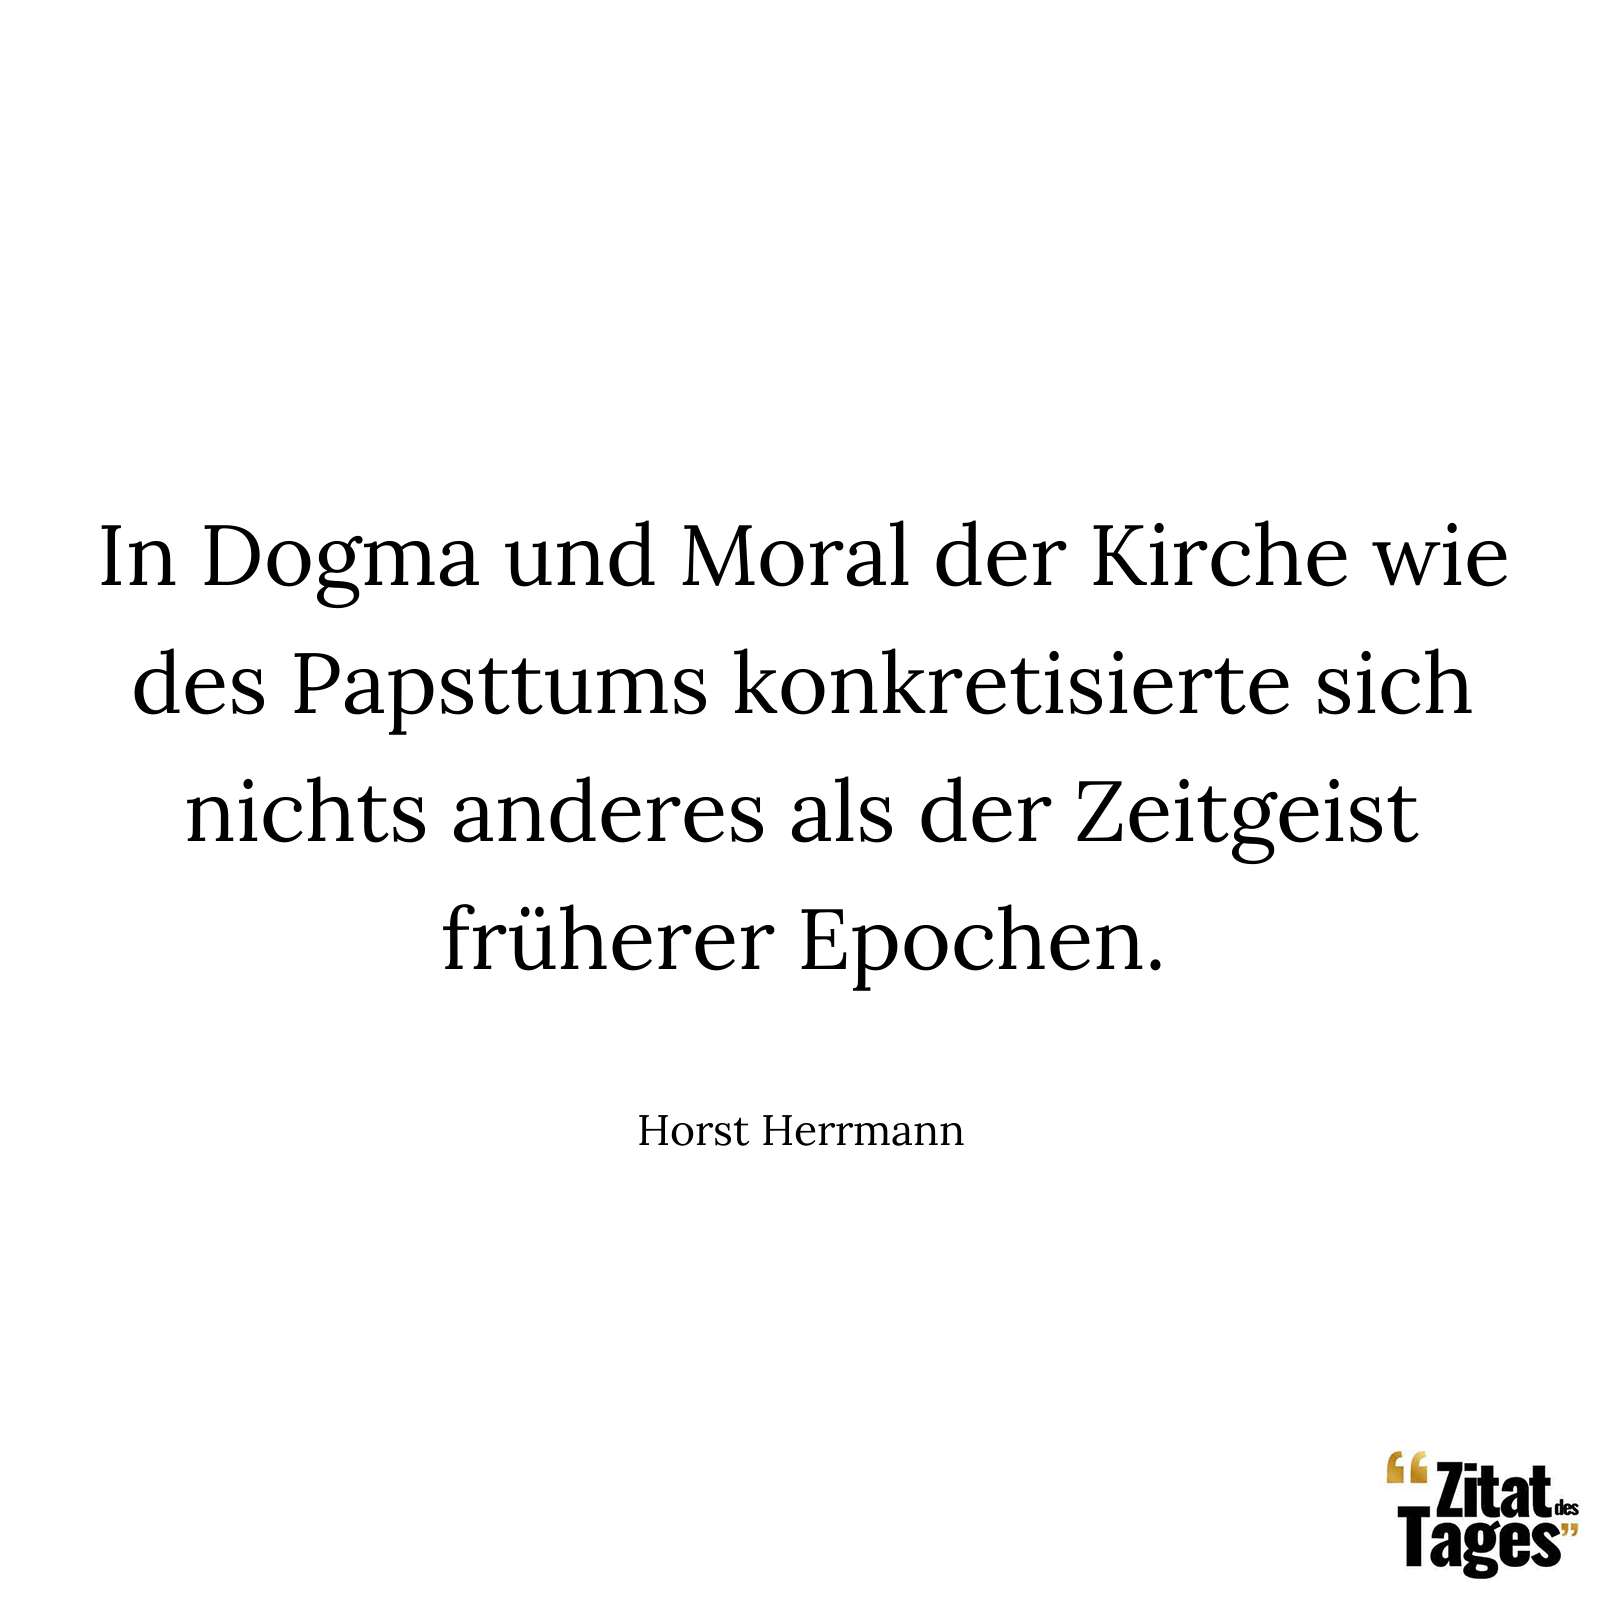 In Dogma und Moral der Kirche wie des Papsttums konkretisierte sich nichts anderes als der Zeitgeist früherer Epochen. - Horst Herrmann